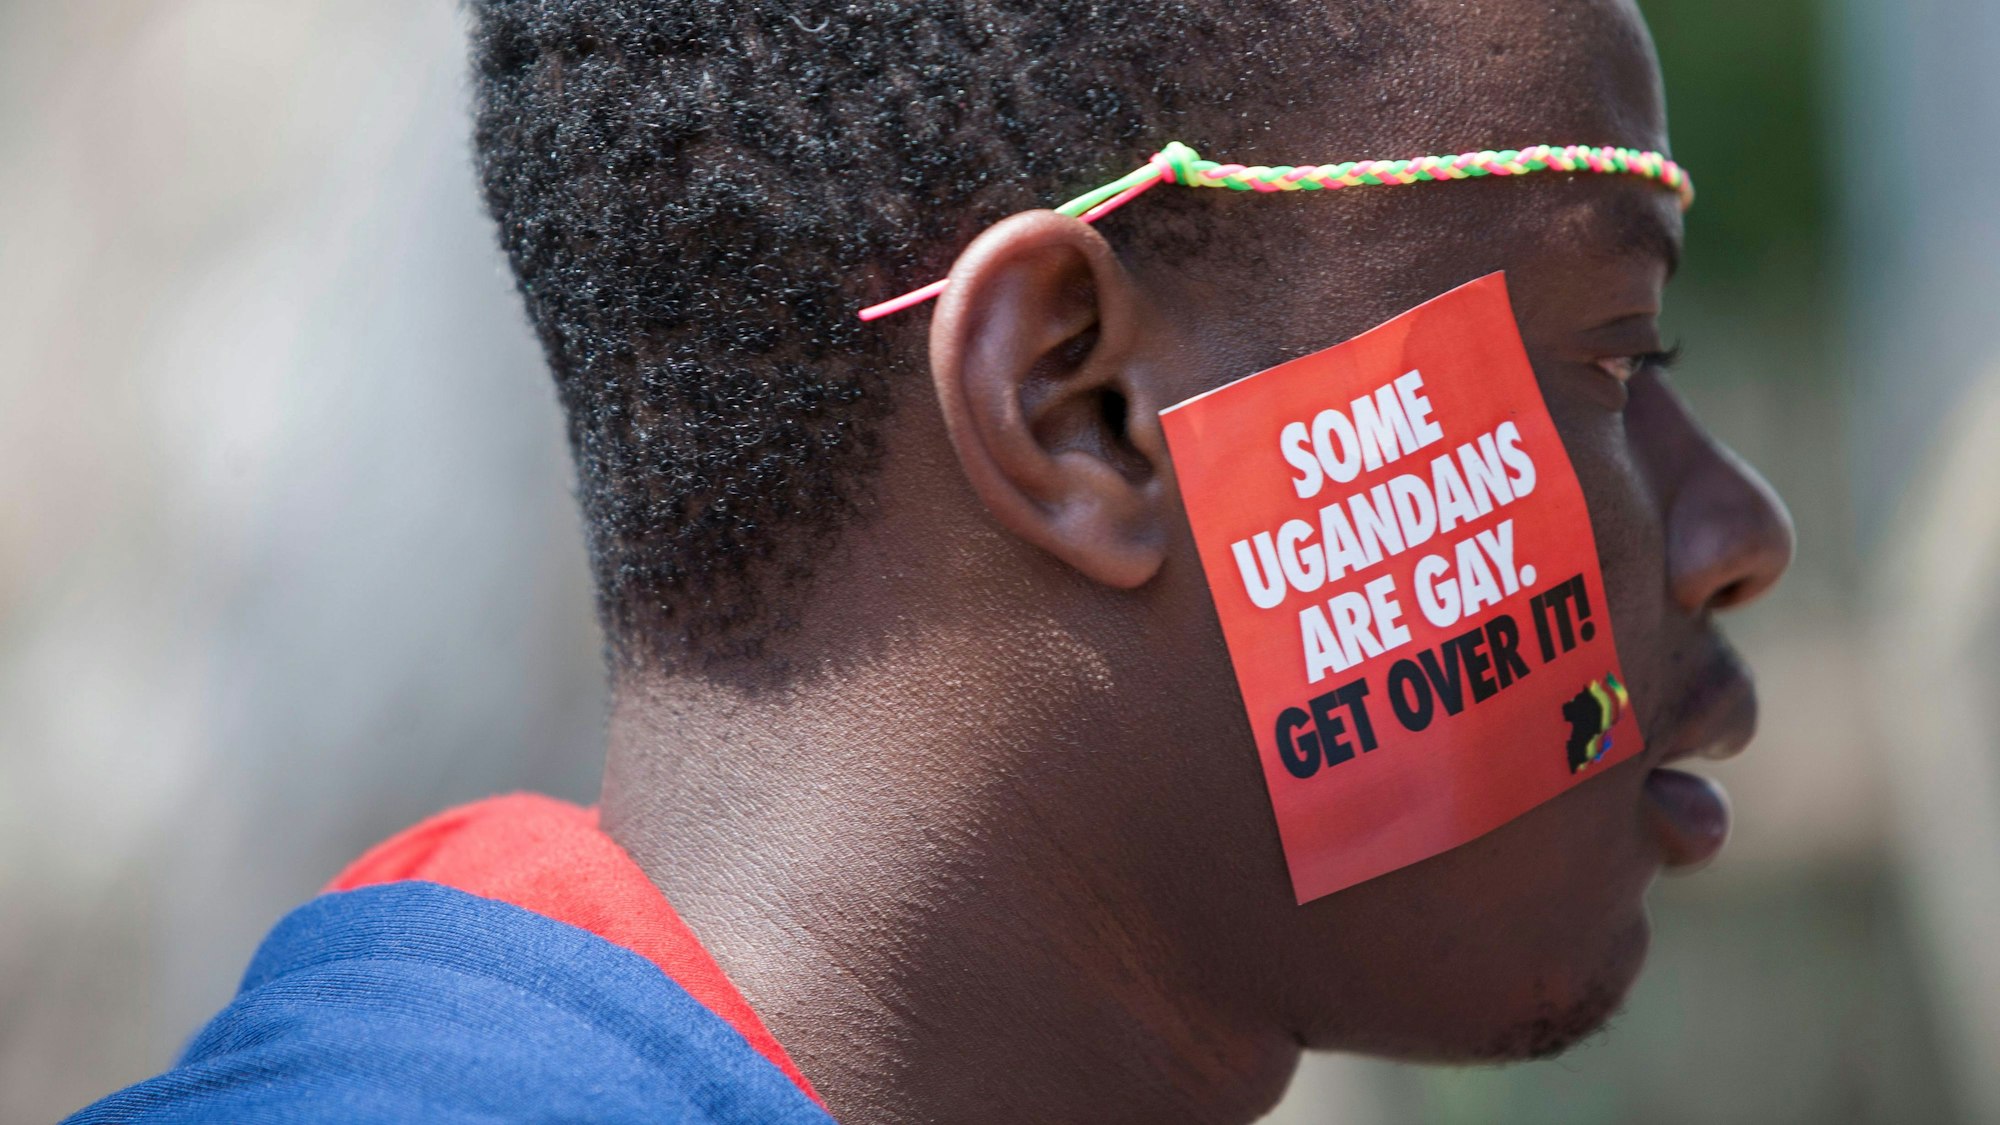 dpatopbilder - ARCHIV - 08.08.2014, Uganda, Entebbe: Ein ugandischer Mann trägt einen Aufkleber mit der Aufschrift "Some Ugandans Are Gay. Get Over It" ("Einige Ugander sind schwul. Finde dich damit ab") während der  LGBT-Pride-Feierlichkeiten auf seiner Wange. Die ugandische Regierung hat ein Gesetz verabschiedet, das Gefängnisstrafen von bis zu zehn Jahren für Straftaten im Zusammenhang mit gleichgeschlechtlichen Beziehungen vorsieht und damit auf die Stimmung in der Bevölkerung reagiert, aber auch den Druck auf die LGBTQ-Gemeinschaft des ostafrikanischen Landes erhöht. Foto: Rebecca Vassie/AP/dpa +++ dpa-Bildfunk +++